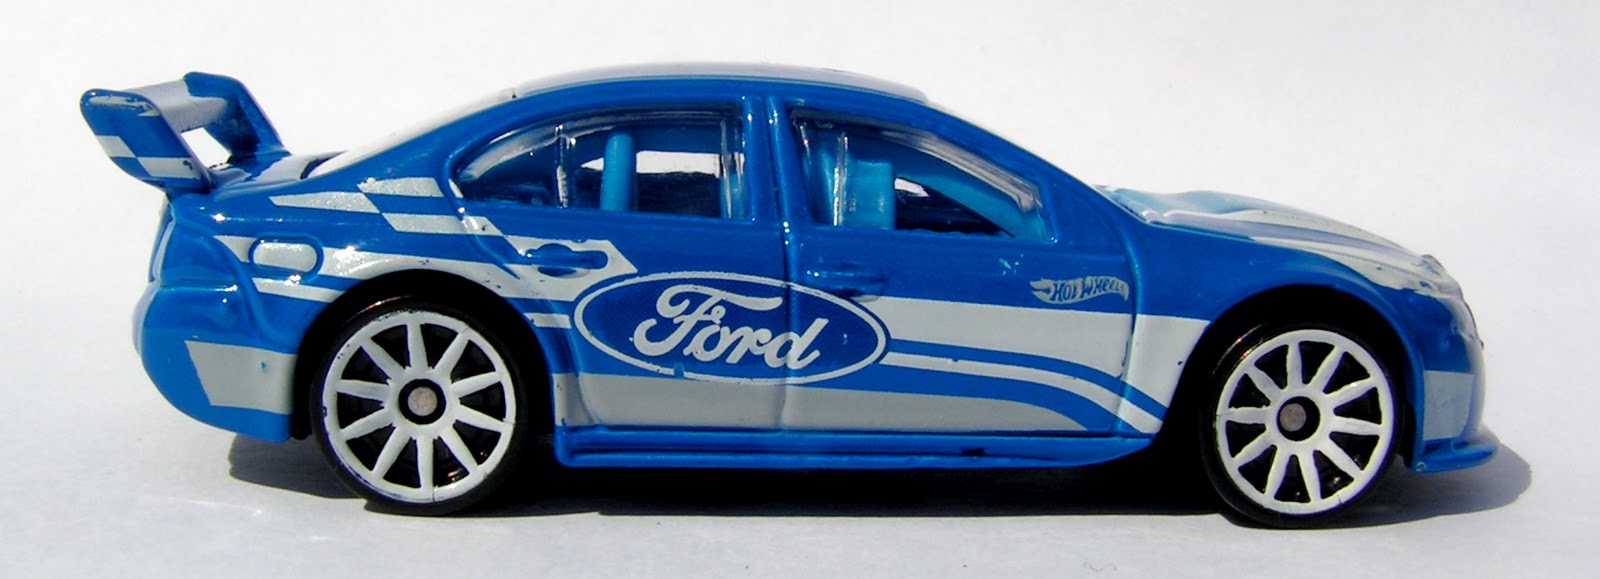 Ford V8 Supercar